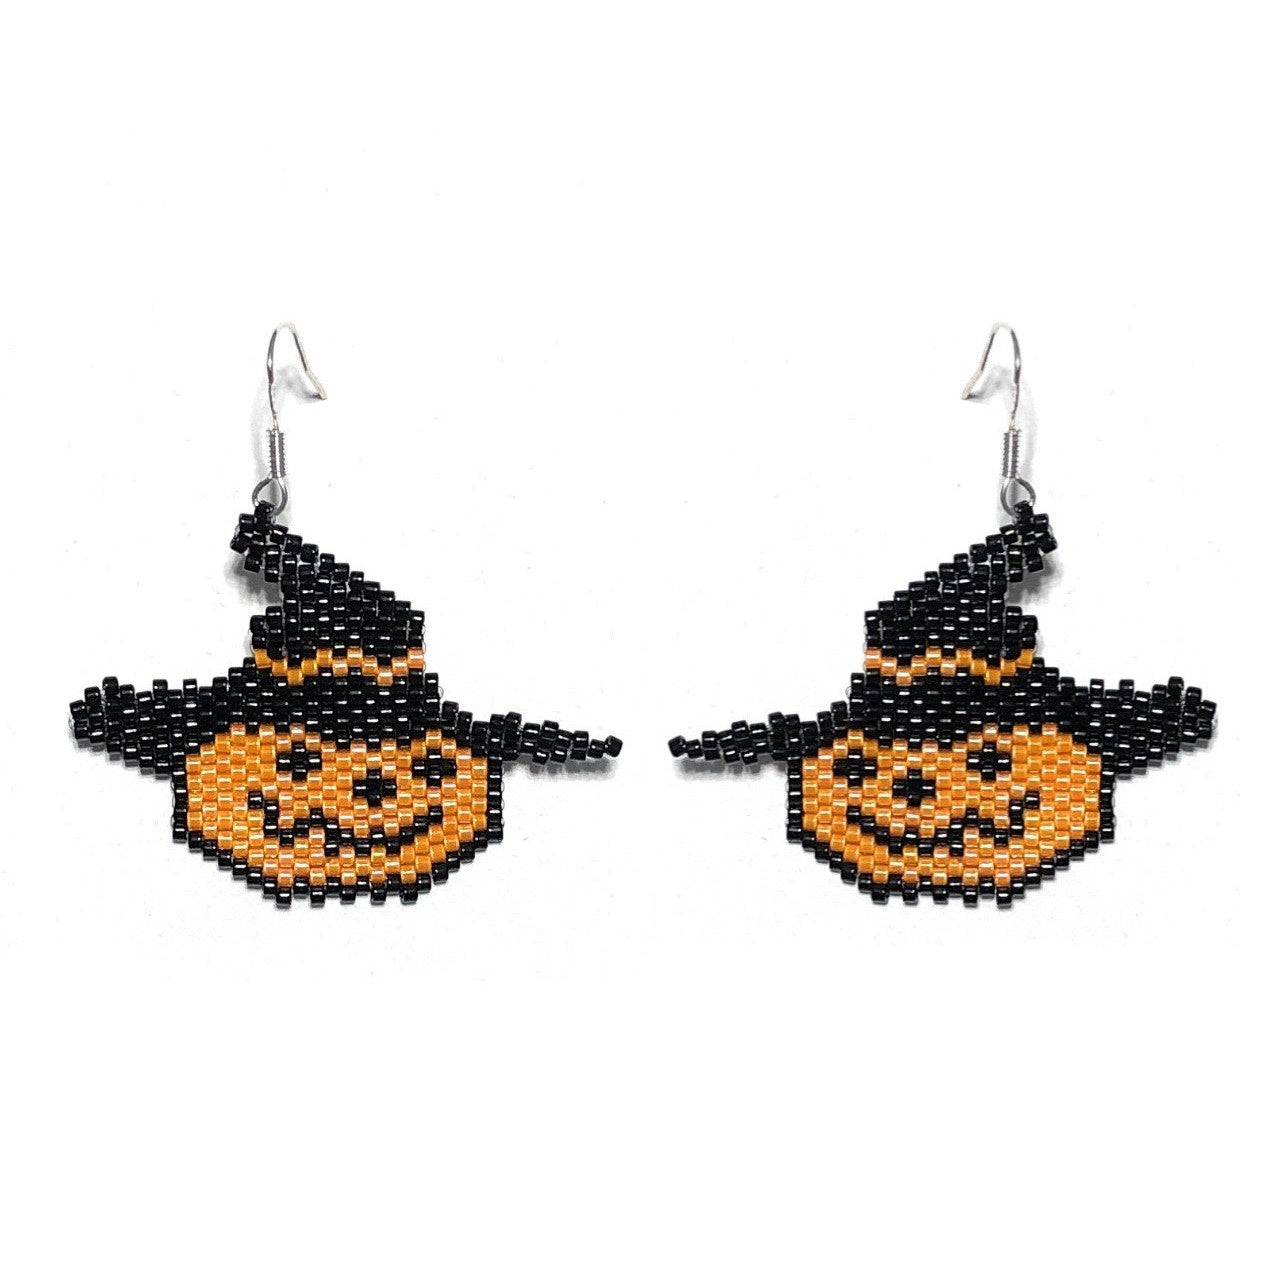 925 Sterling Silver Halloween Pumpkin Earrings